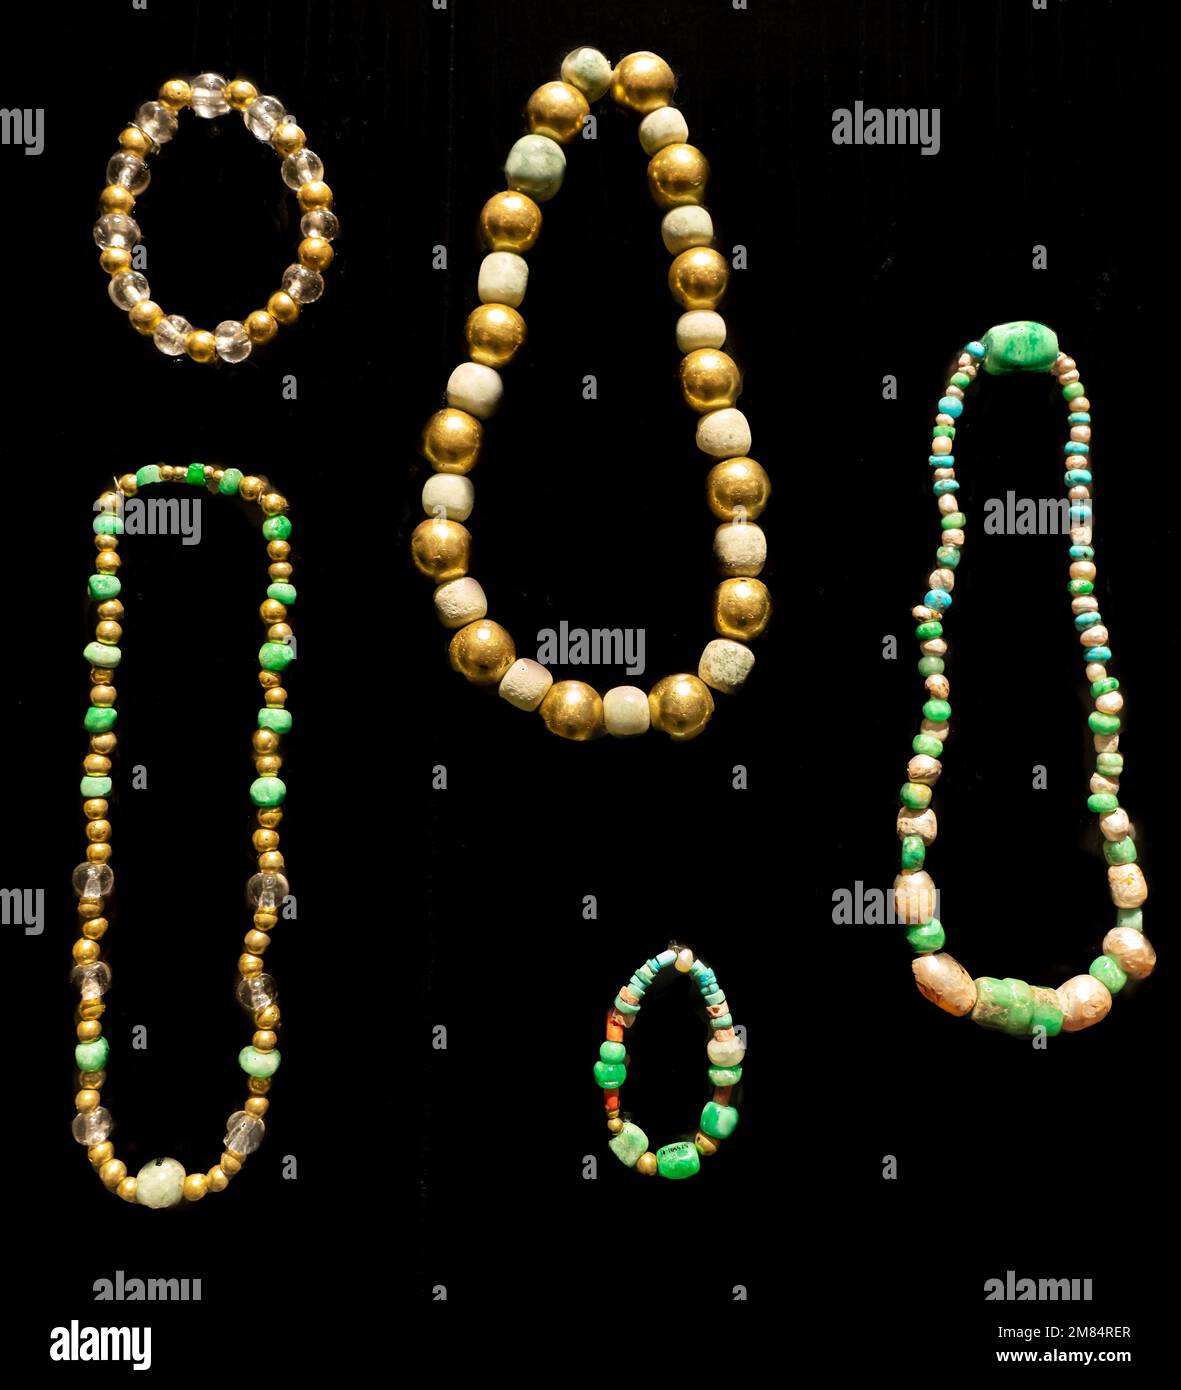 Collane e bracciali d'oro, giada, turchese e cristallo. Museo delle culture di Oaxaca, Oaxaca, Messico. Dalla Tomba 7 al Monte Albardate Postclassic P. Foto Stock